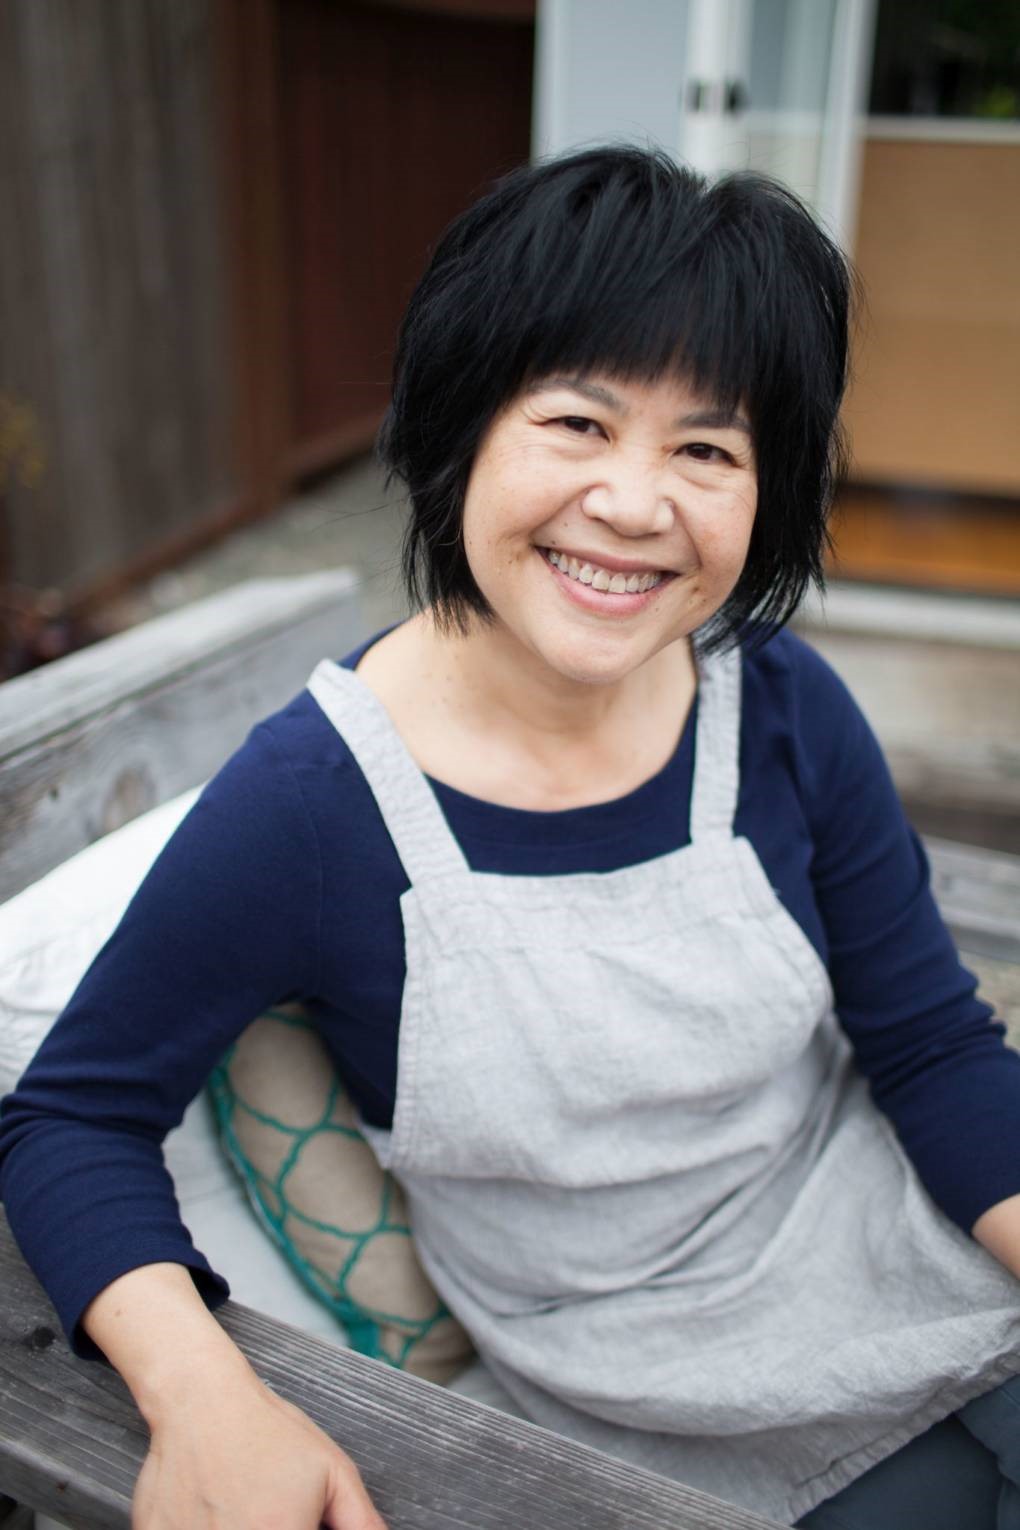 Trò chuyện cùng Andrea Nguyễn - nữ đầu bếp người Việt tự viết sách dạy nấu phở - Ảnh 1.